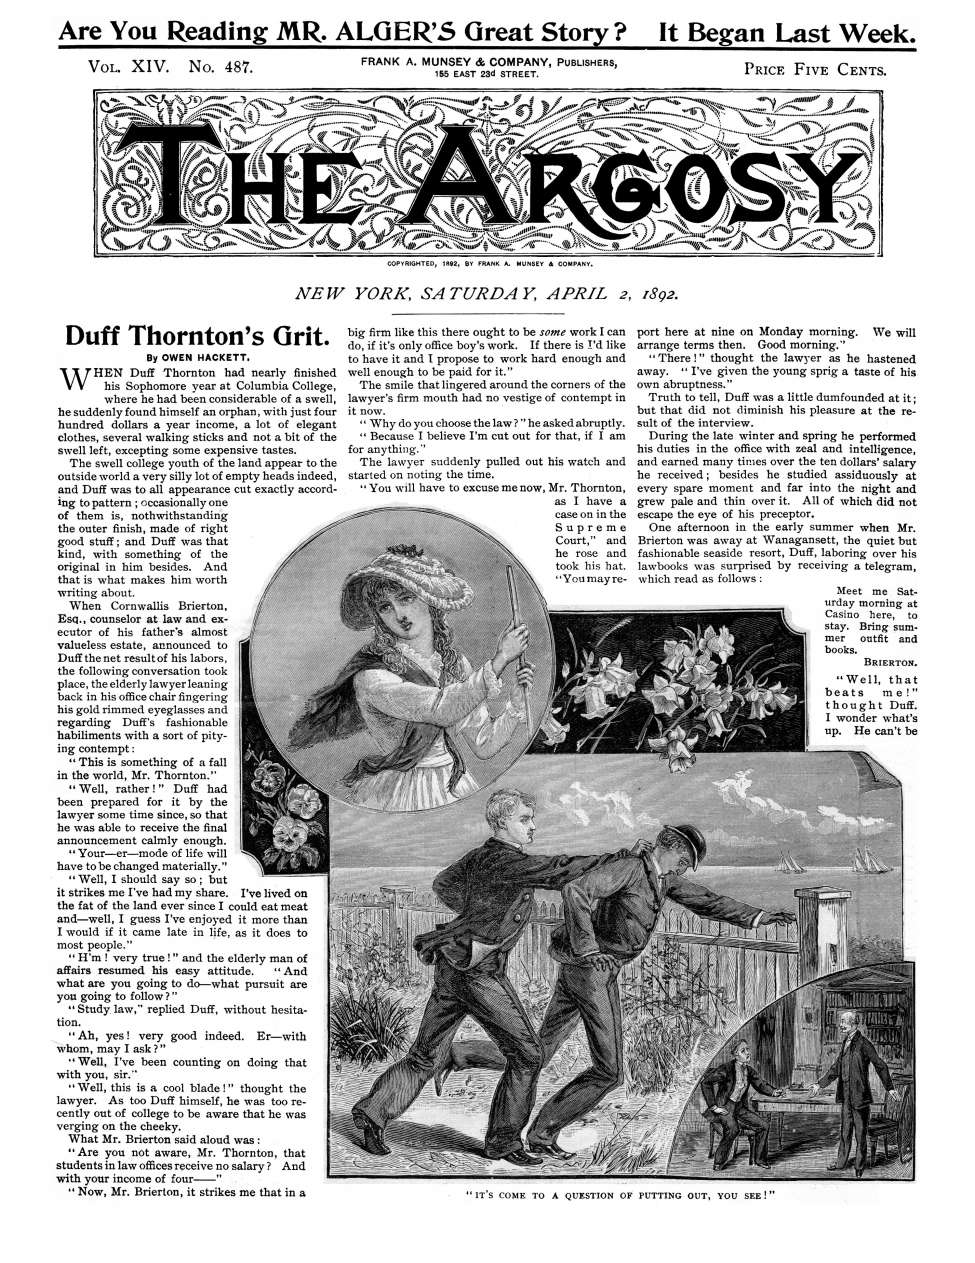 Book Cover For The Argosy v14 487